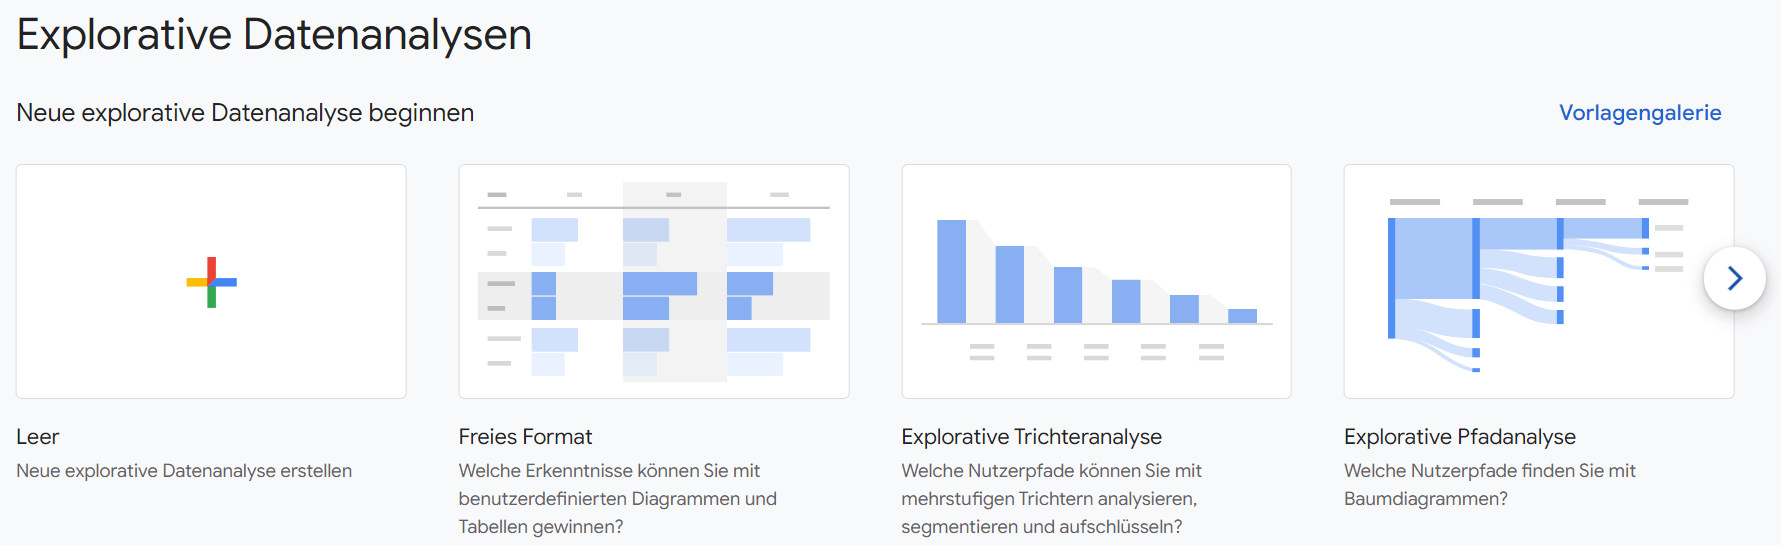 Grafik zu den verschiedenen explorativen Datenanalysen in Google Analytics 4.